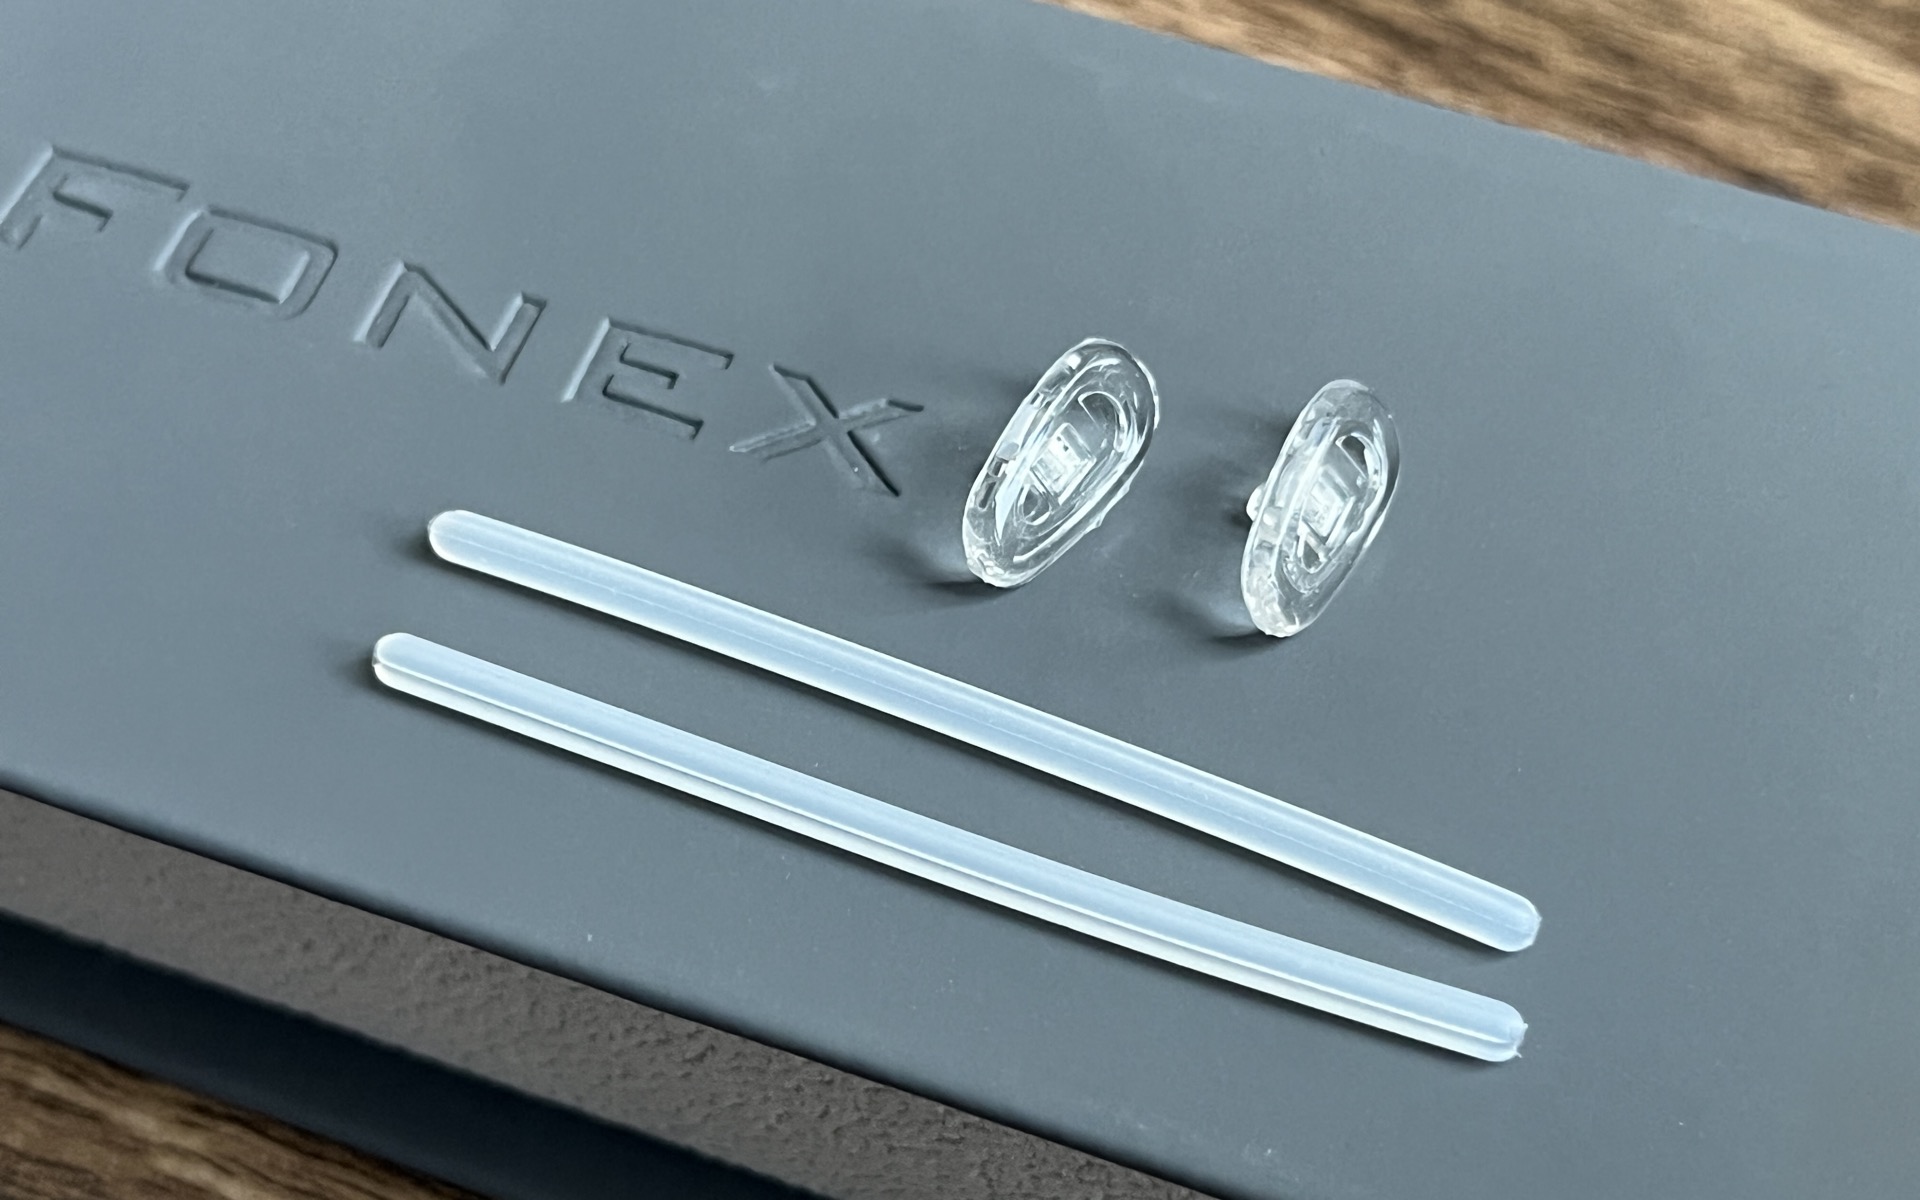 Review nhanh gọng kính Fonex mua online